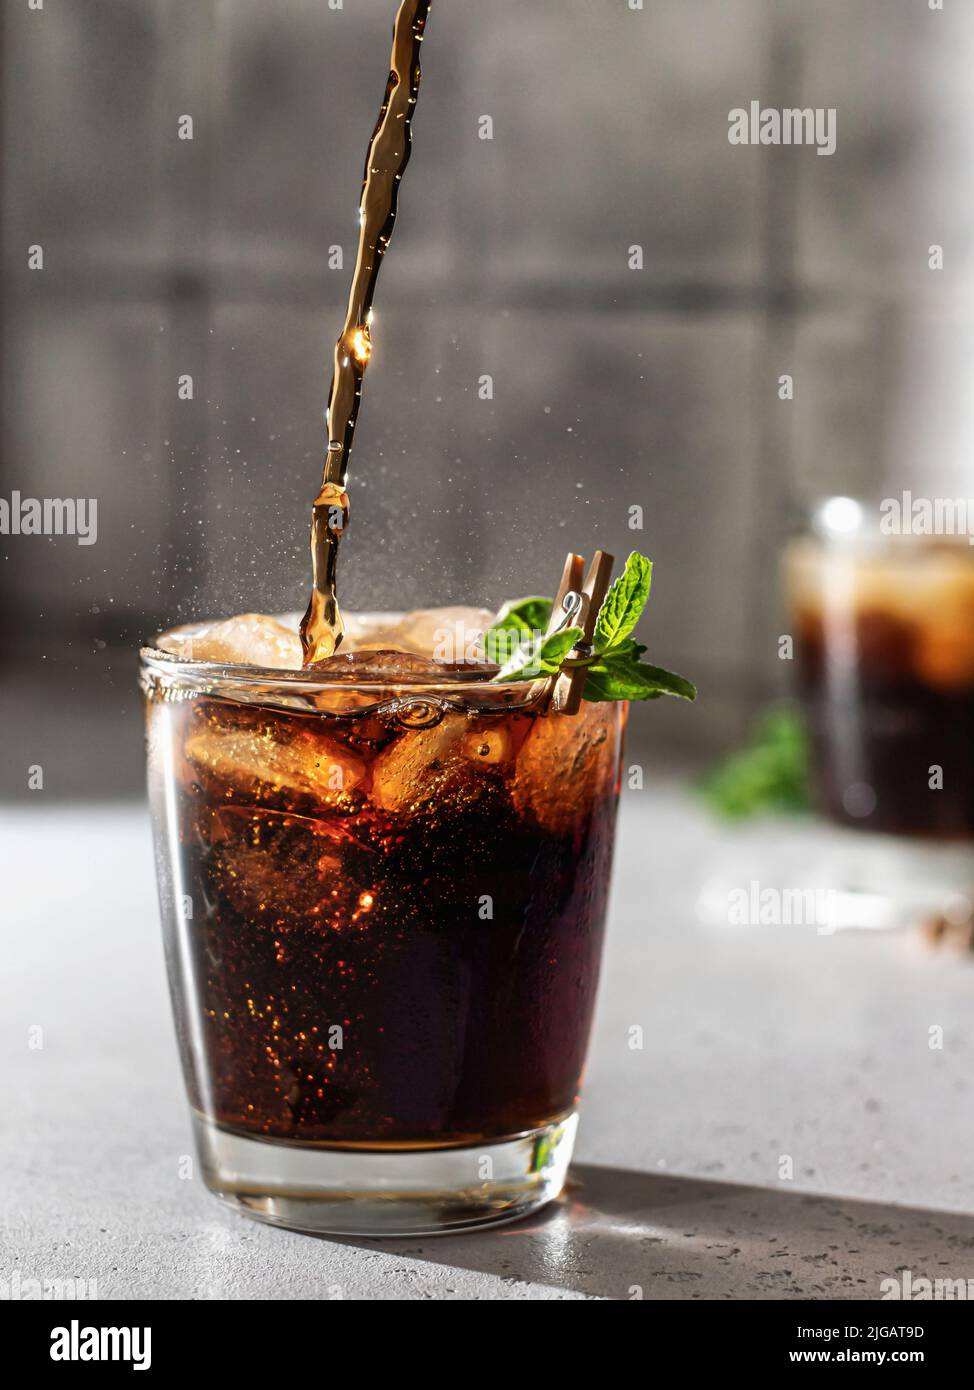 Verser le Cola ou le cocktail Cuba libre dans un verre avec des glaçons et de la menthe. Boisson non alcoolisée avec éclaboussures. Orientation verticale Banque D'Images